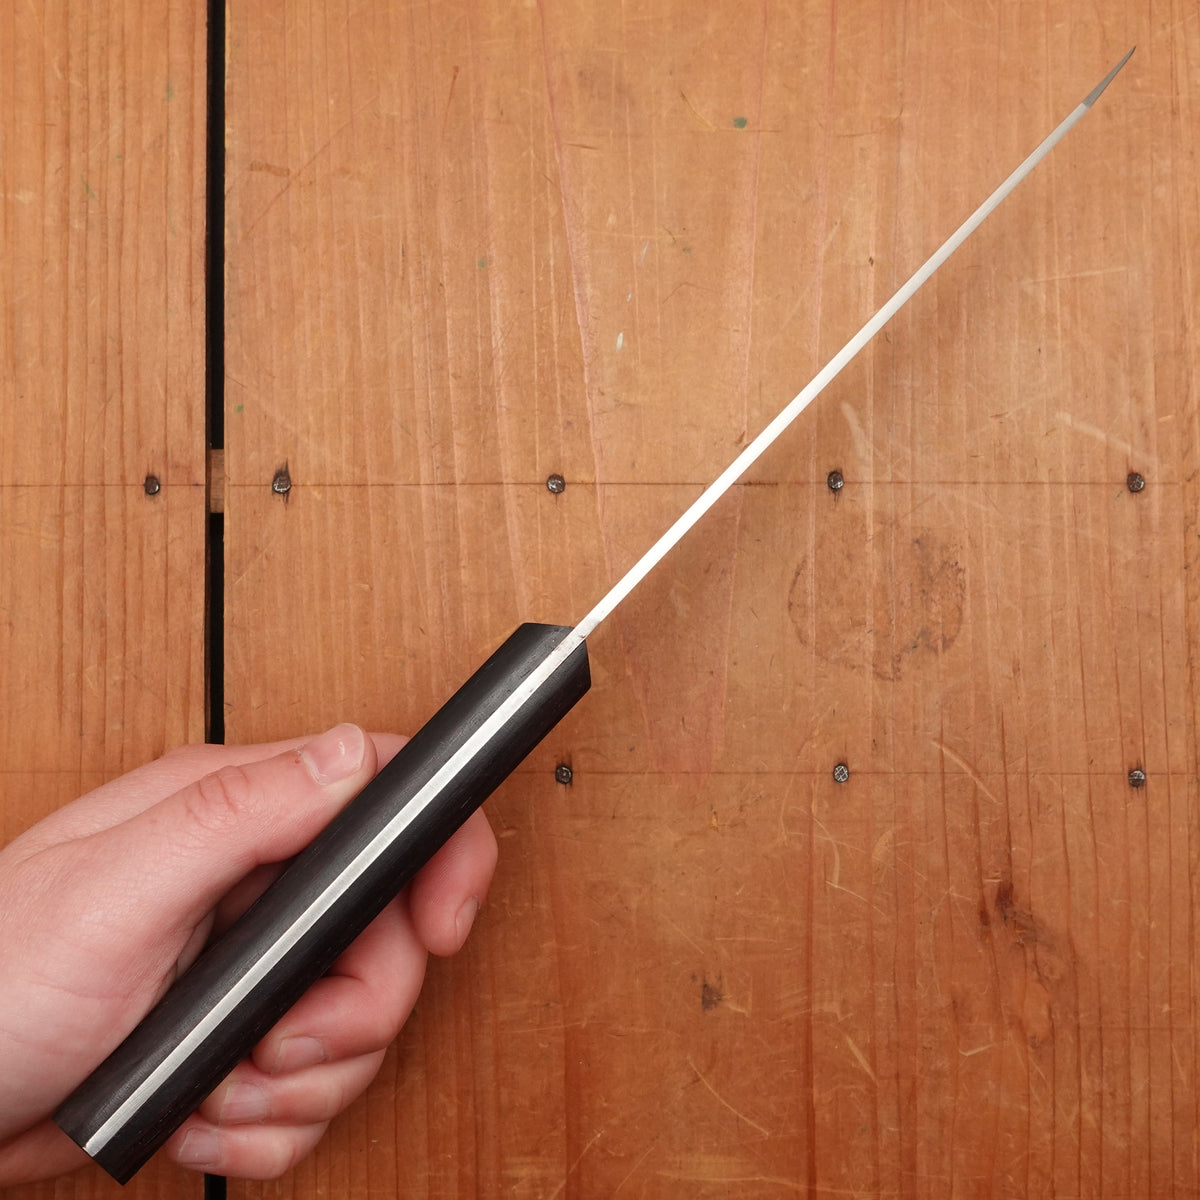 Kanehide 150mm Honesuki Kaku Semi-Stainless Japanese Butcher Knife